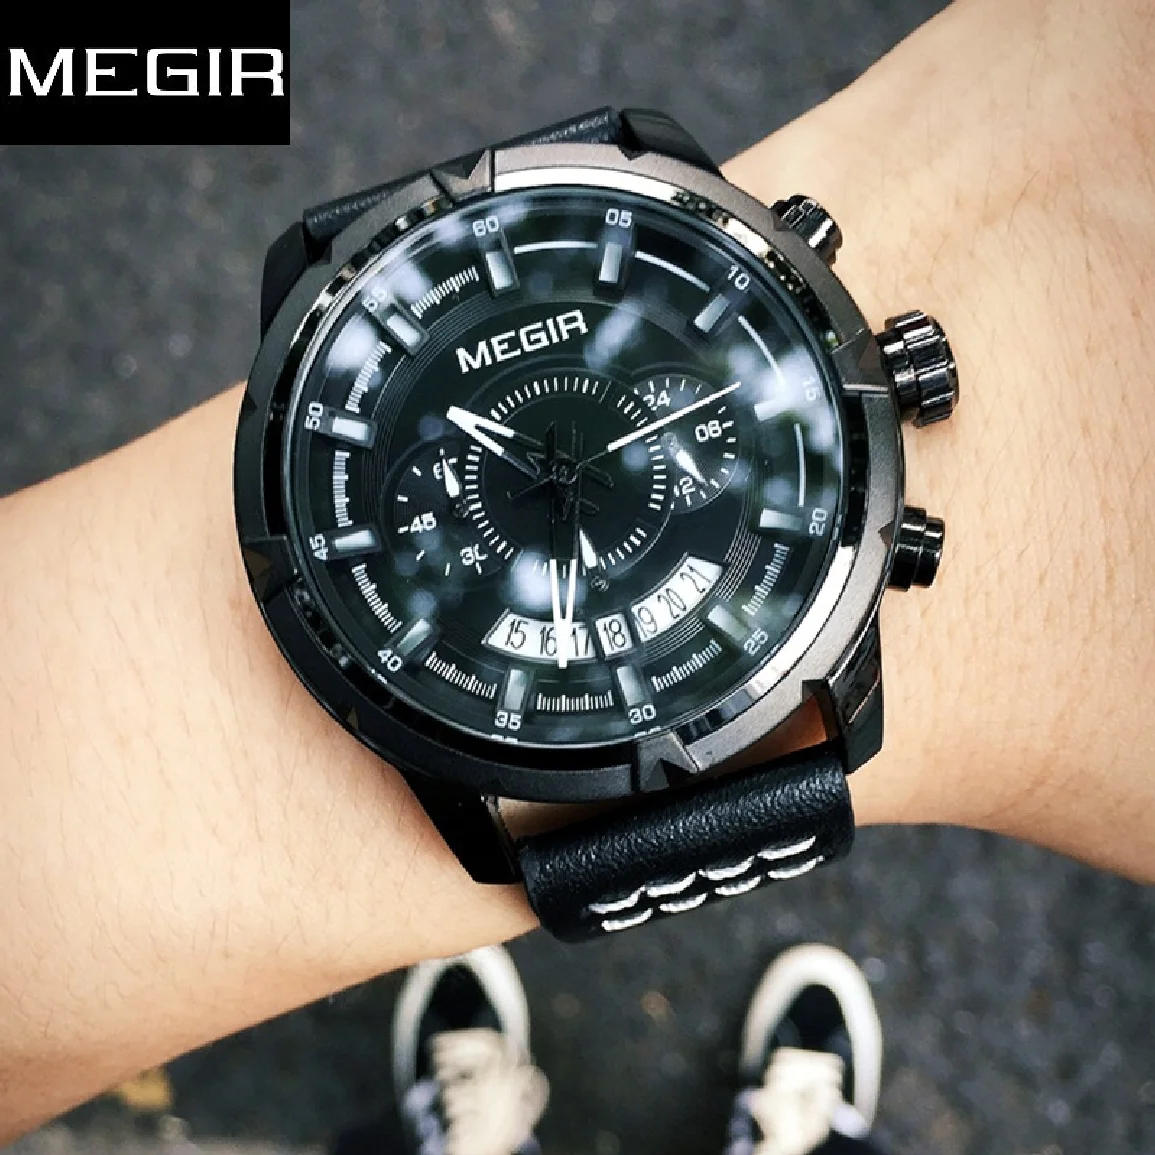 

Часы наручные MEGIR Мужские кварцевые, спортивные многофункциональные модные светящиеся с хронографом и кожаным ремешком